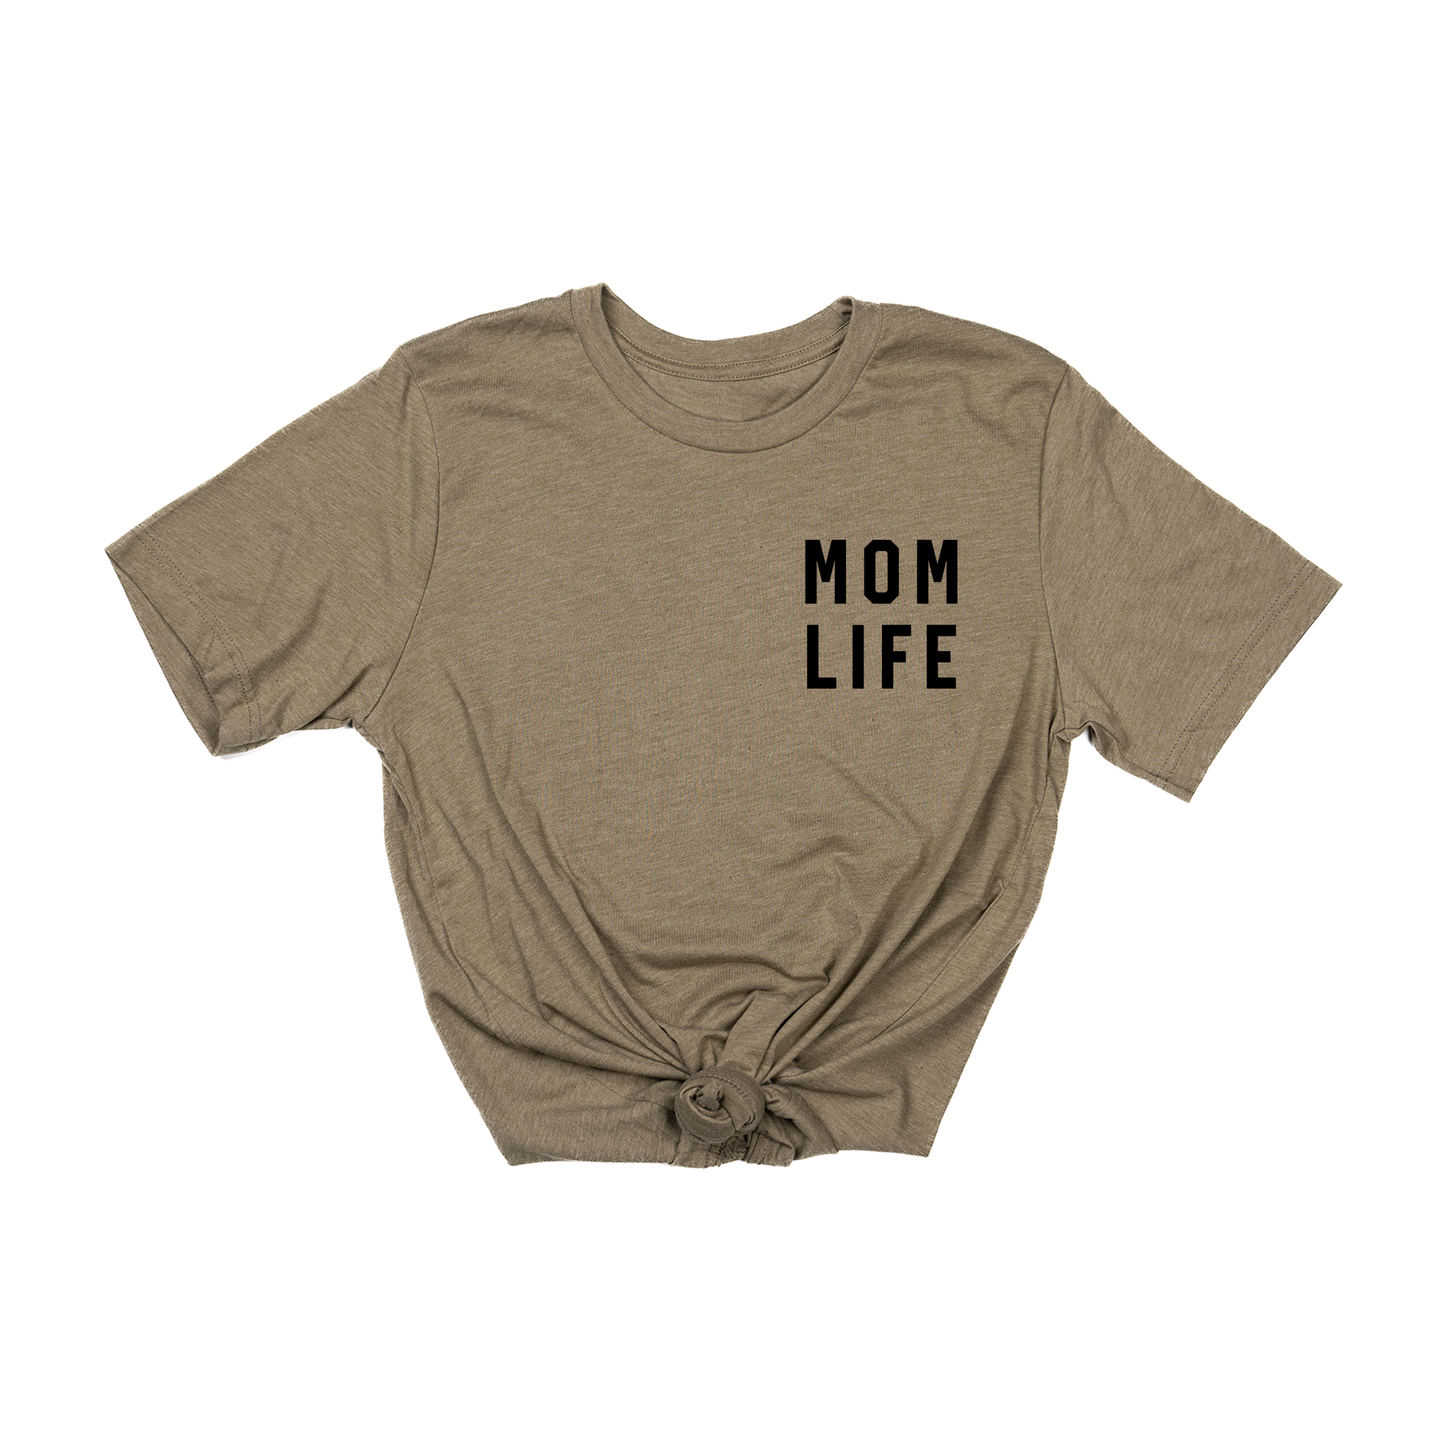 Mom Life (Pocket, Black) - Tee (Olive)